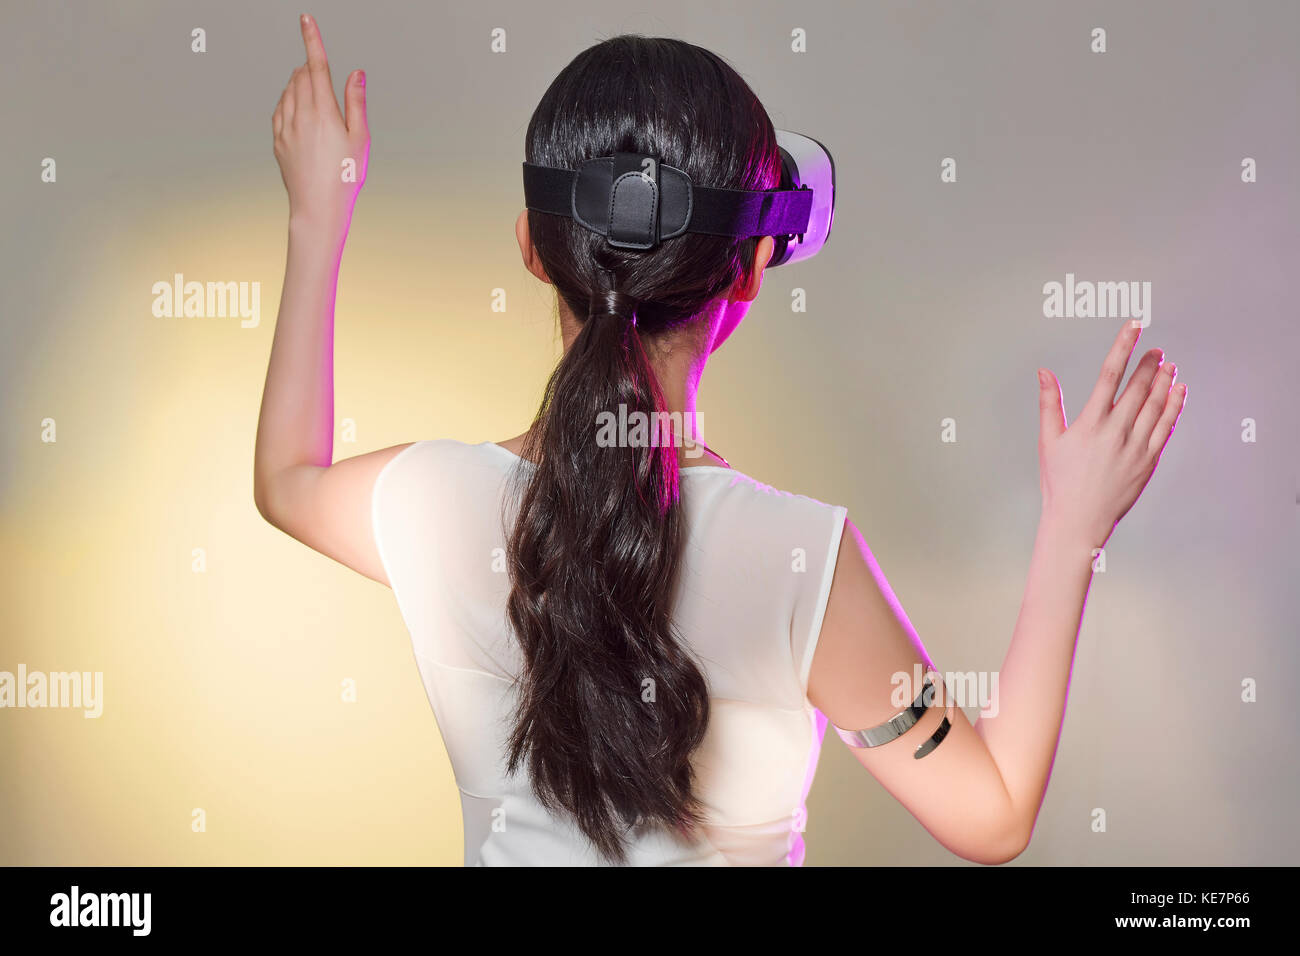 Retour portrait de jeune femme avec casque de réalité virtuelle Banque D'Images